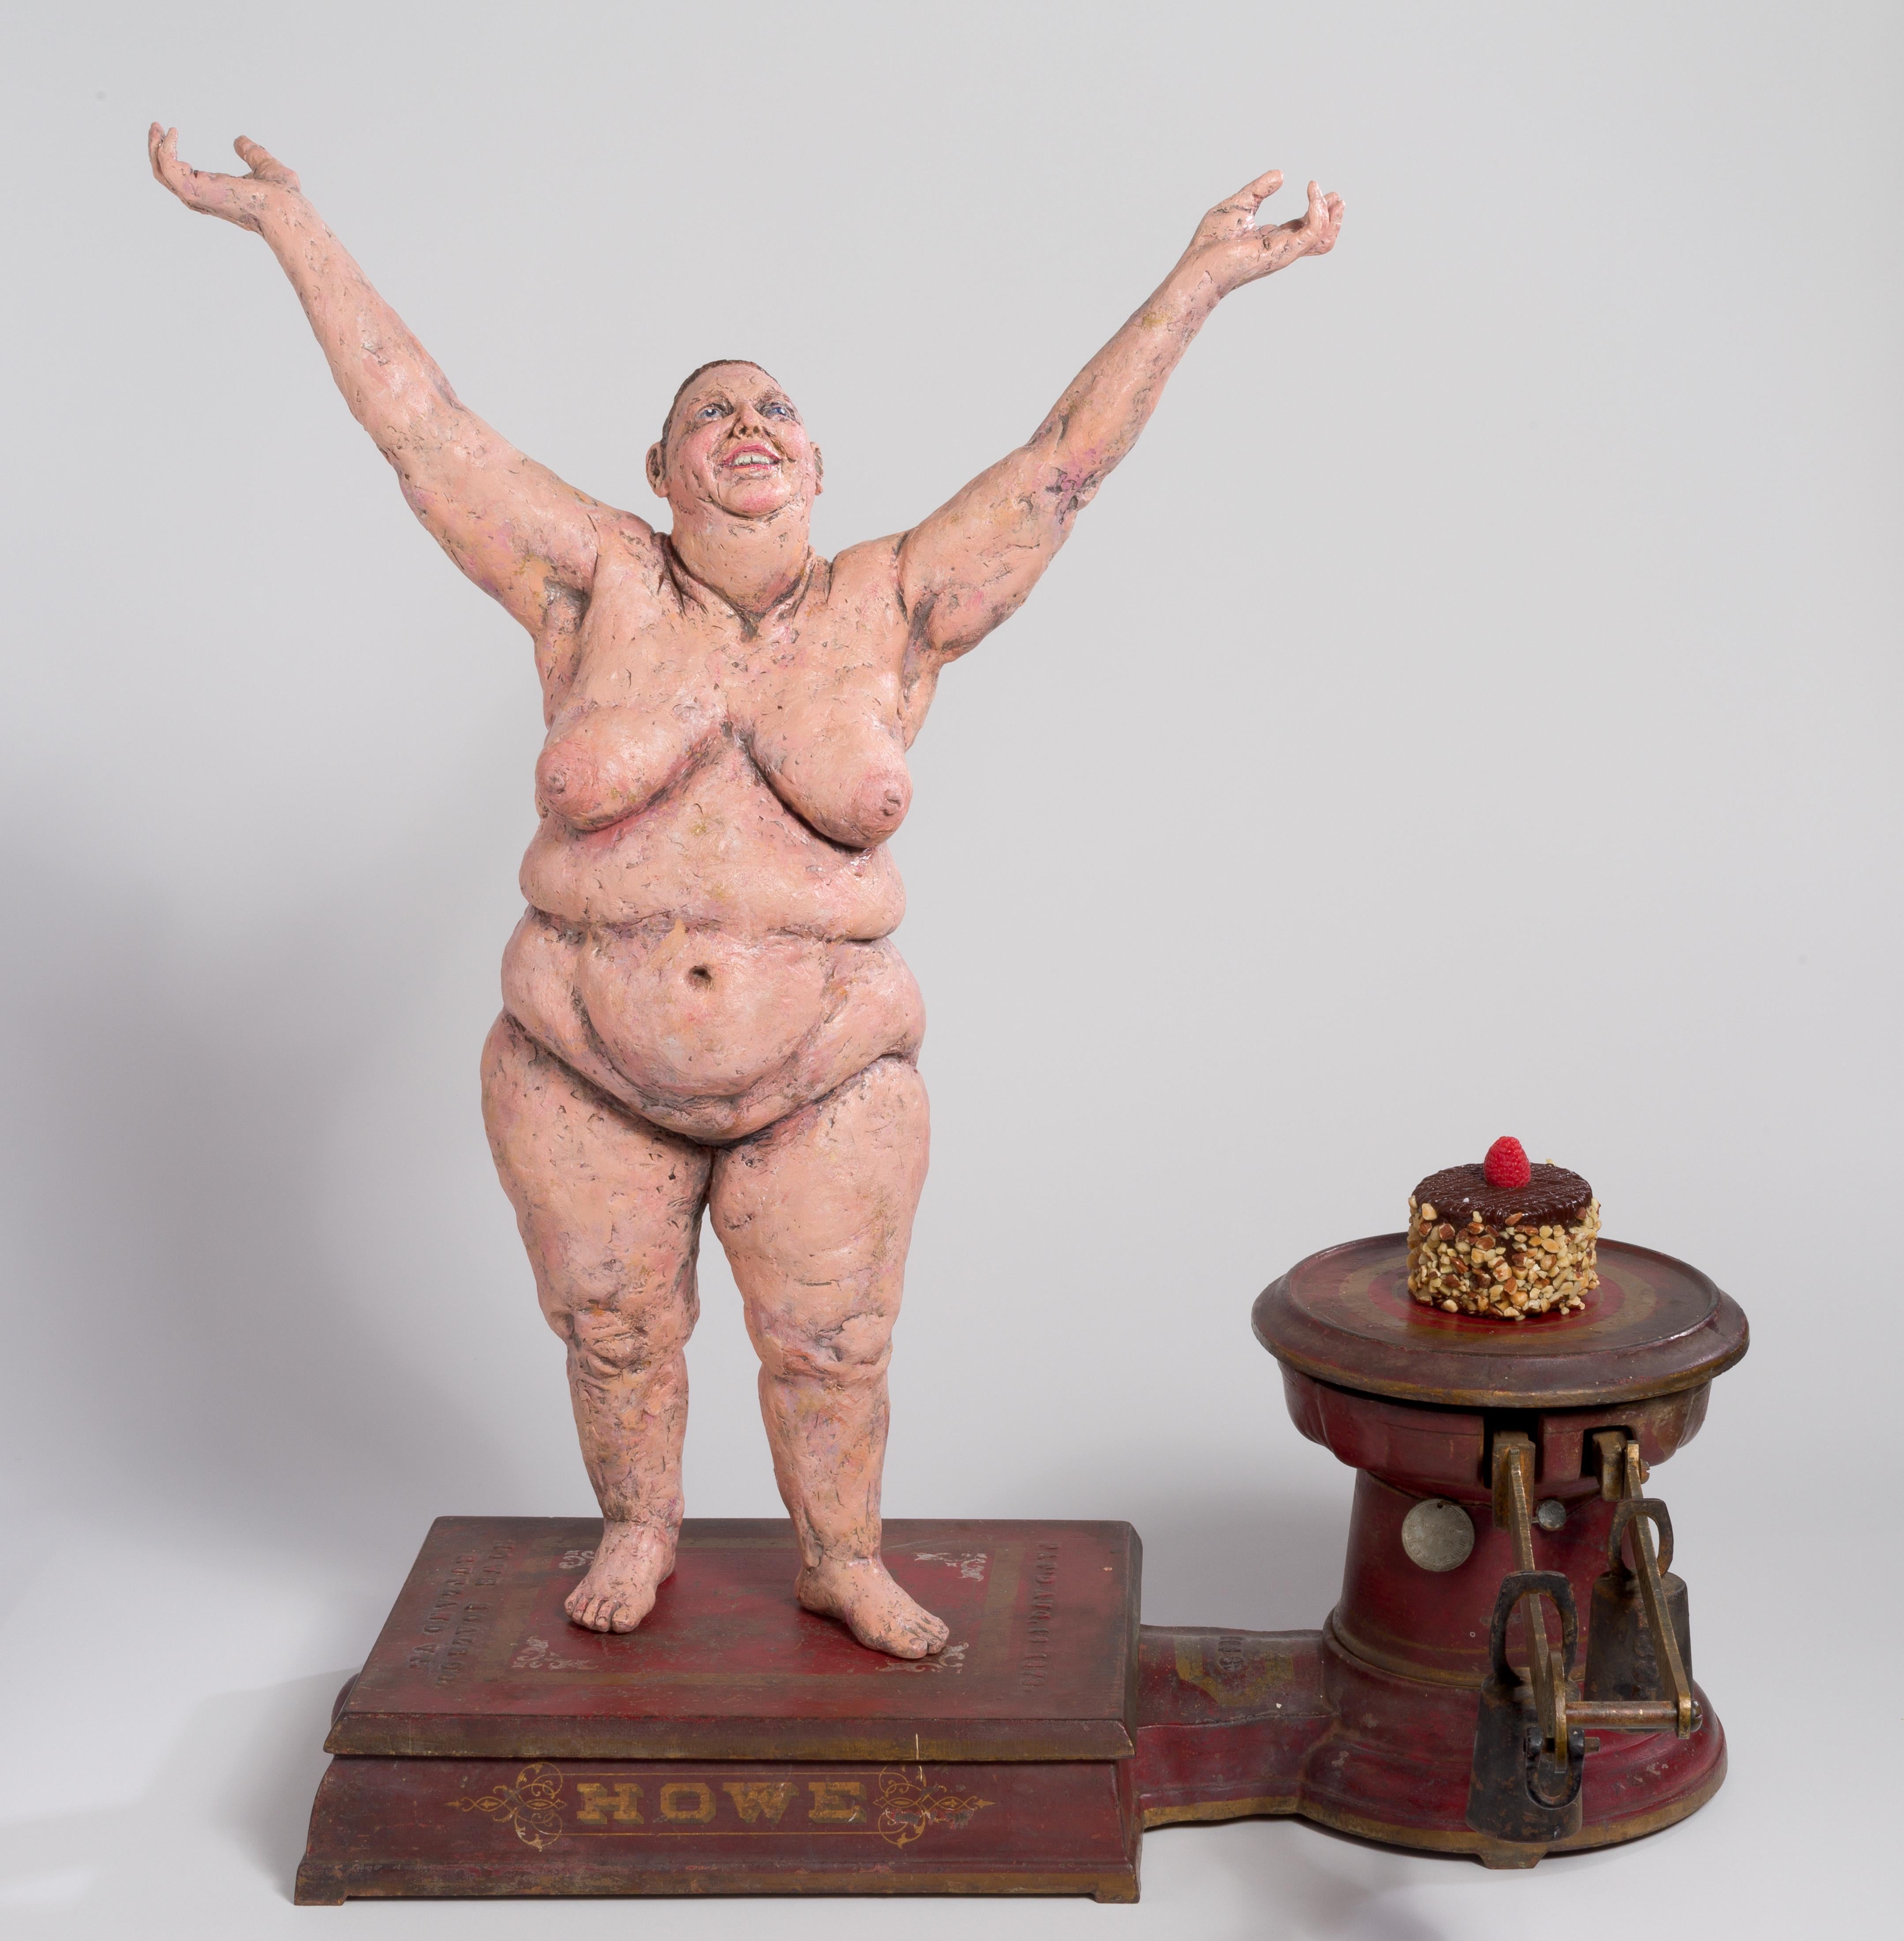 Kristine Schomaker, Susan Amorde Nude Sculpture - “Ta-Dah!”